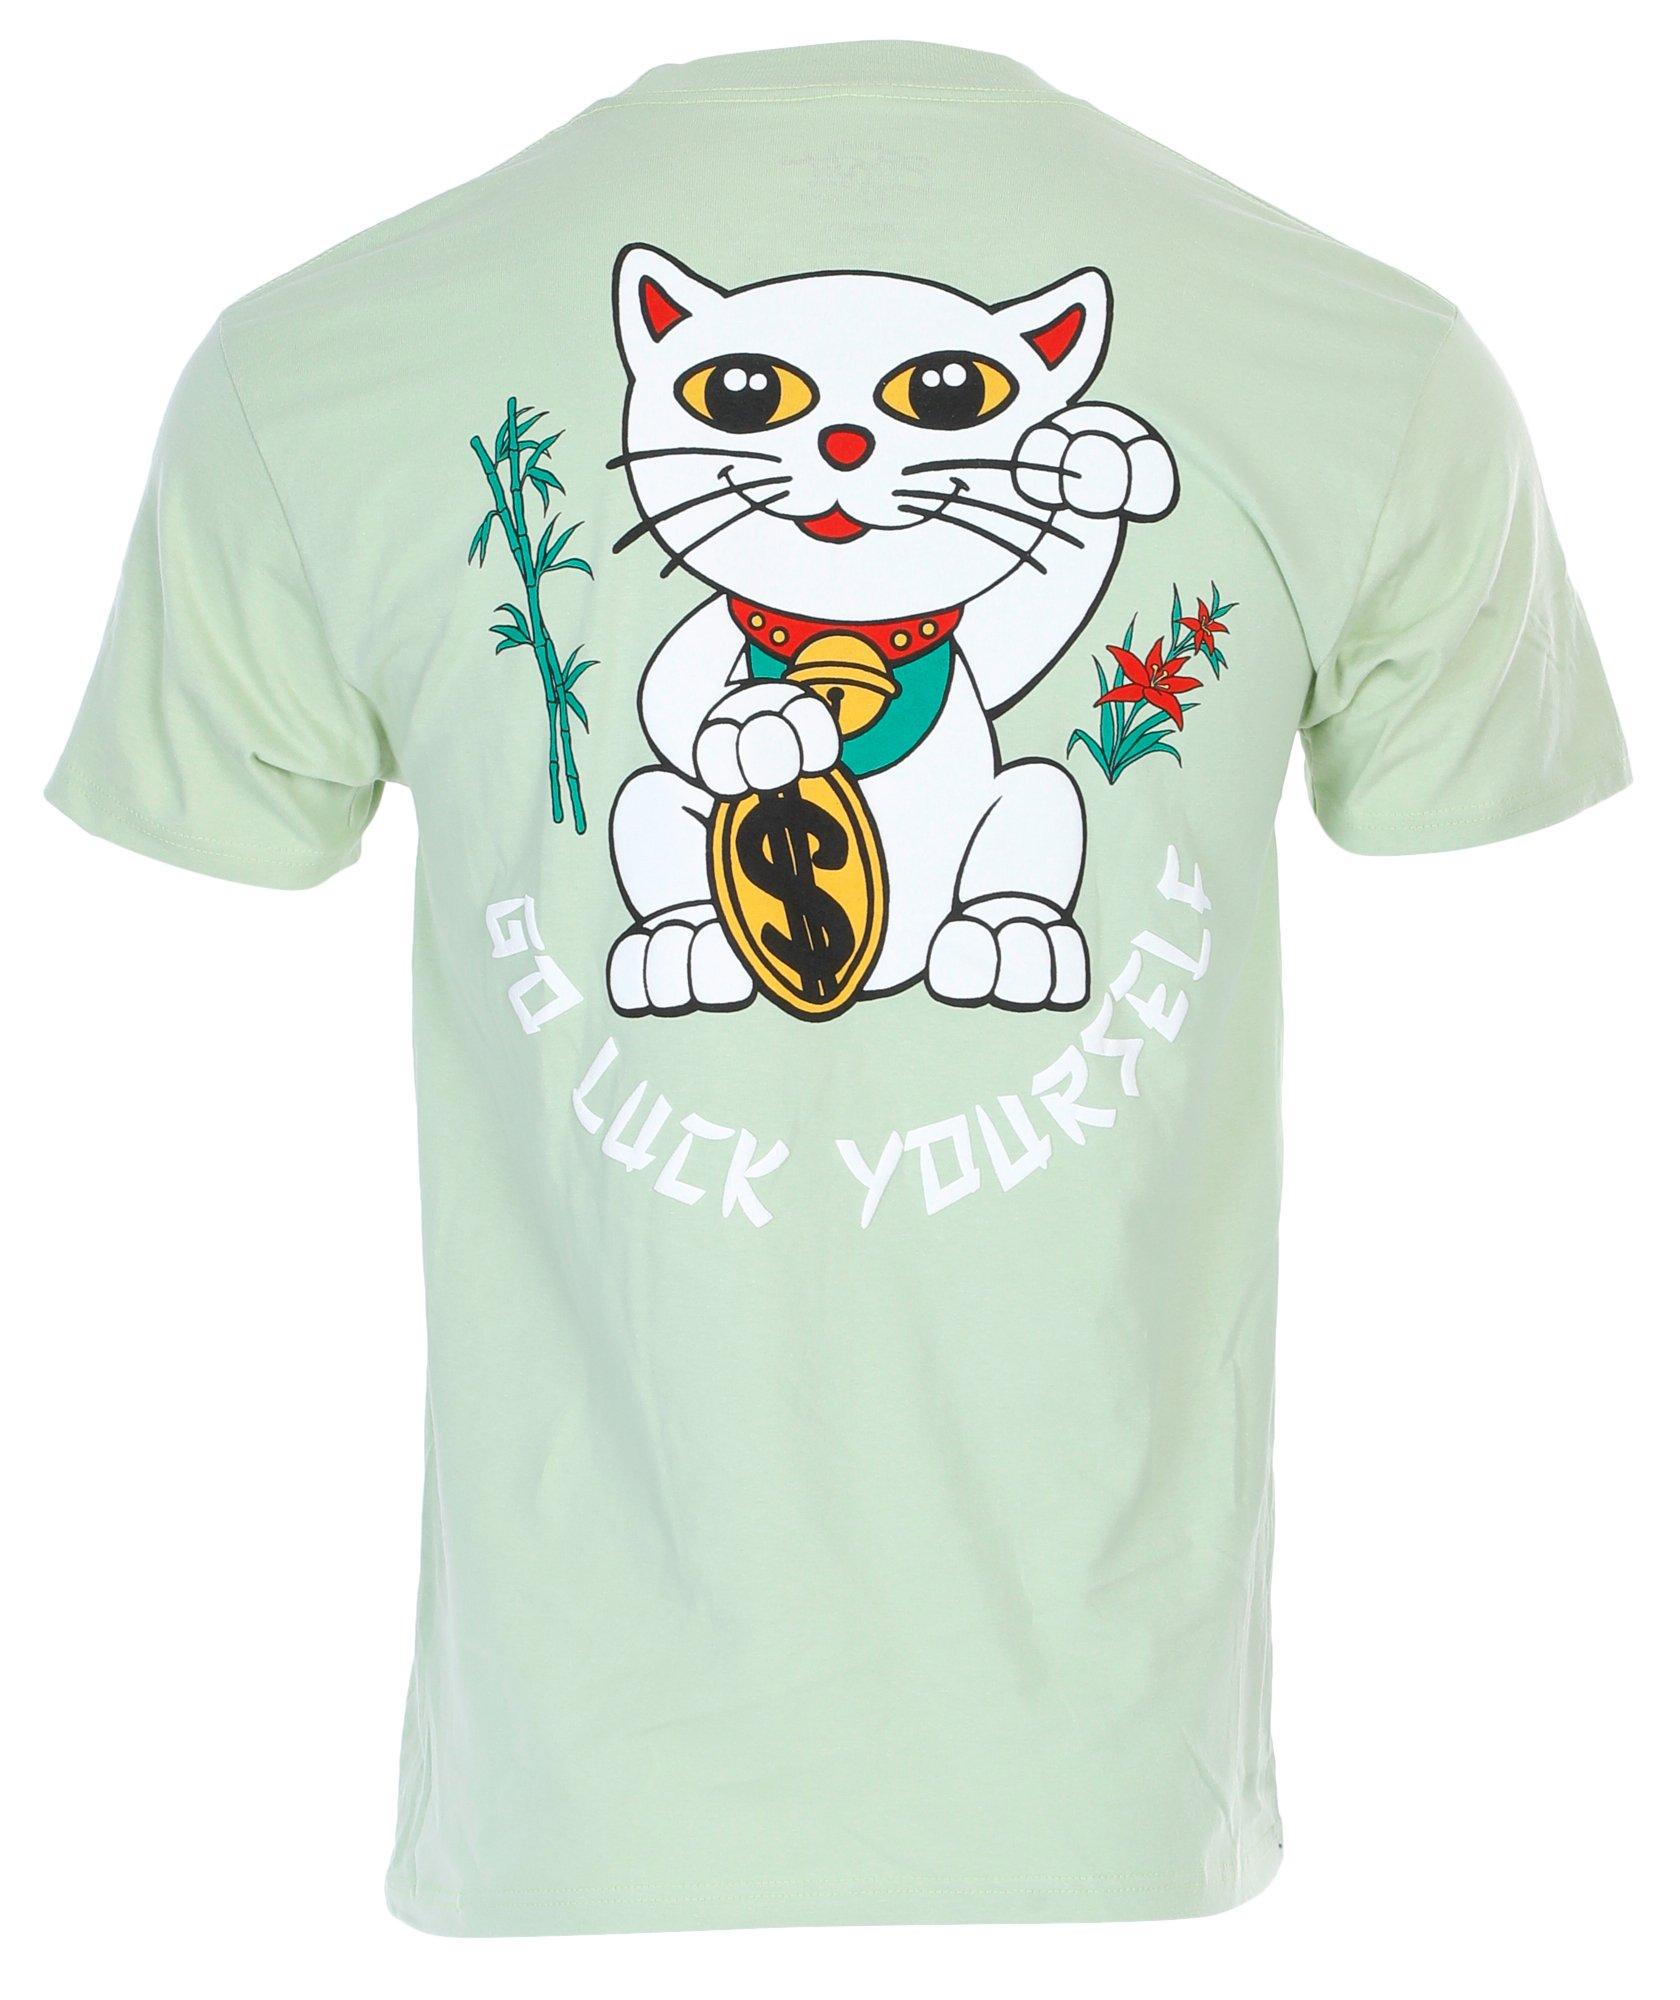 Men's Lucky Cat Graphic T-Shirt